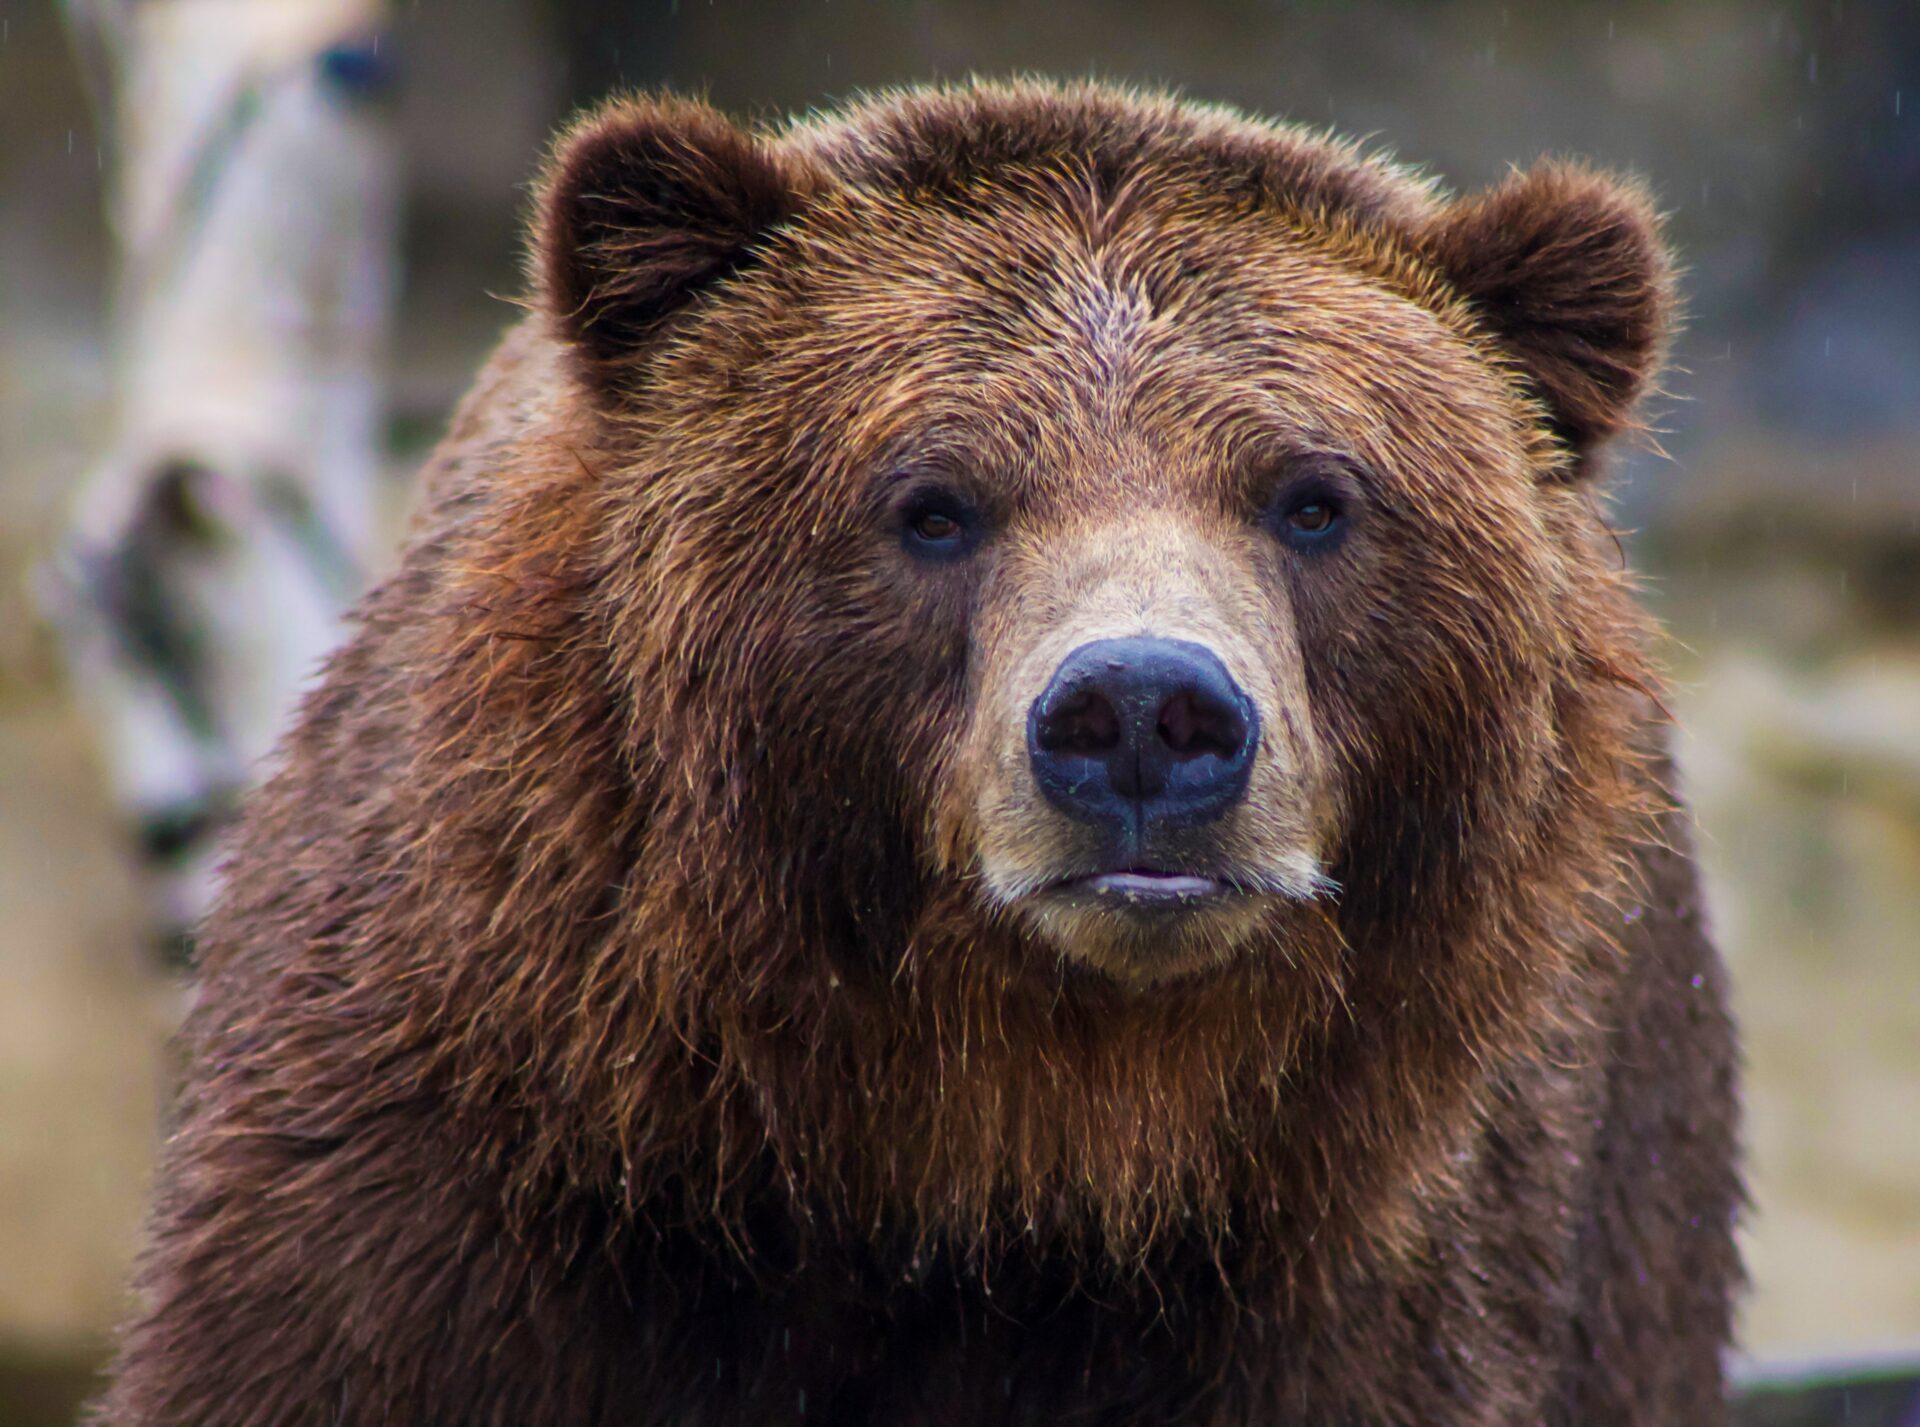 Za posledné dva týždne je známych niekoľko prípadov pytliactva na medveďa hnedého v chránených územiach Slovenska